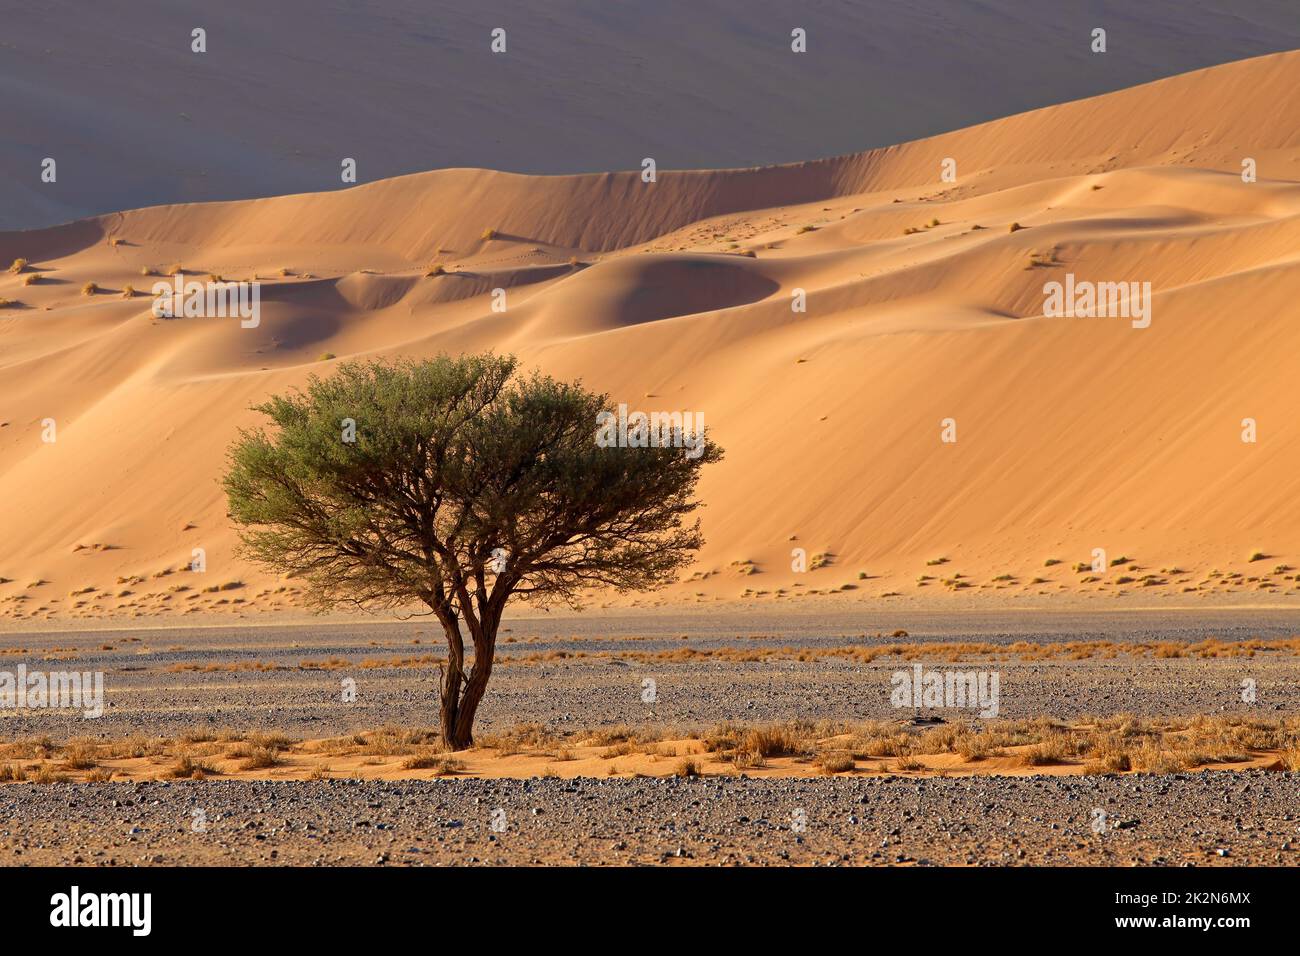 Wüstenlandschaft mit Baum - Namibia Stockfoto